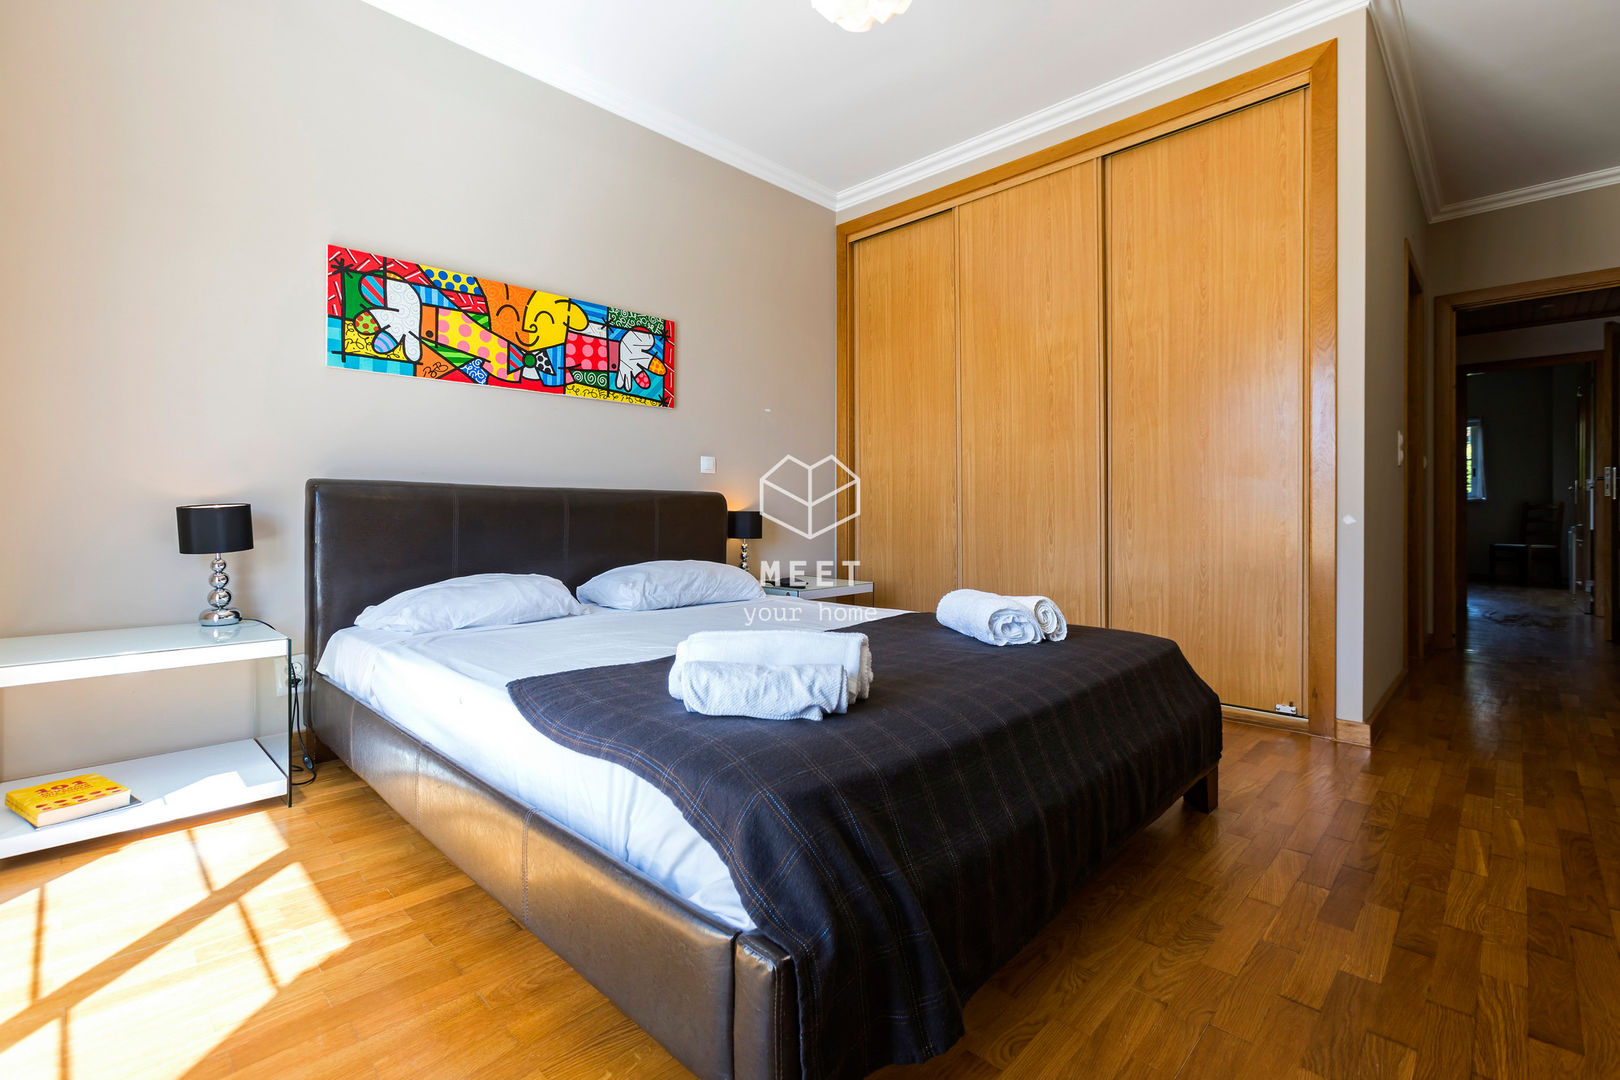 Cascais T2 • Condomínio fechado com piscina, jardim, terraço e garagem, MEET your home MEET your home Classic style bedroom